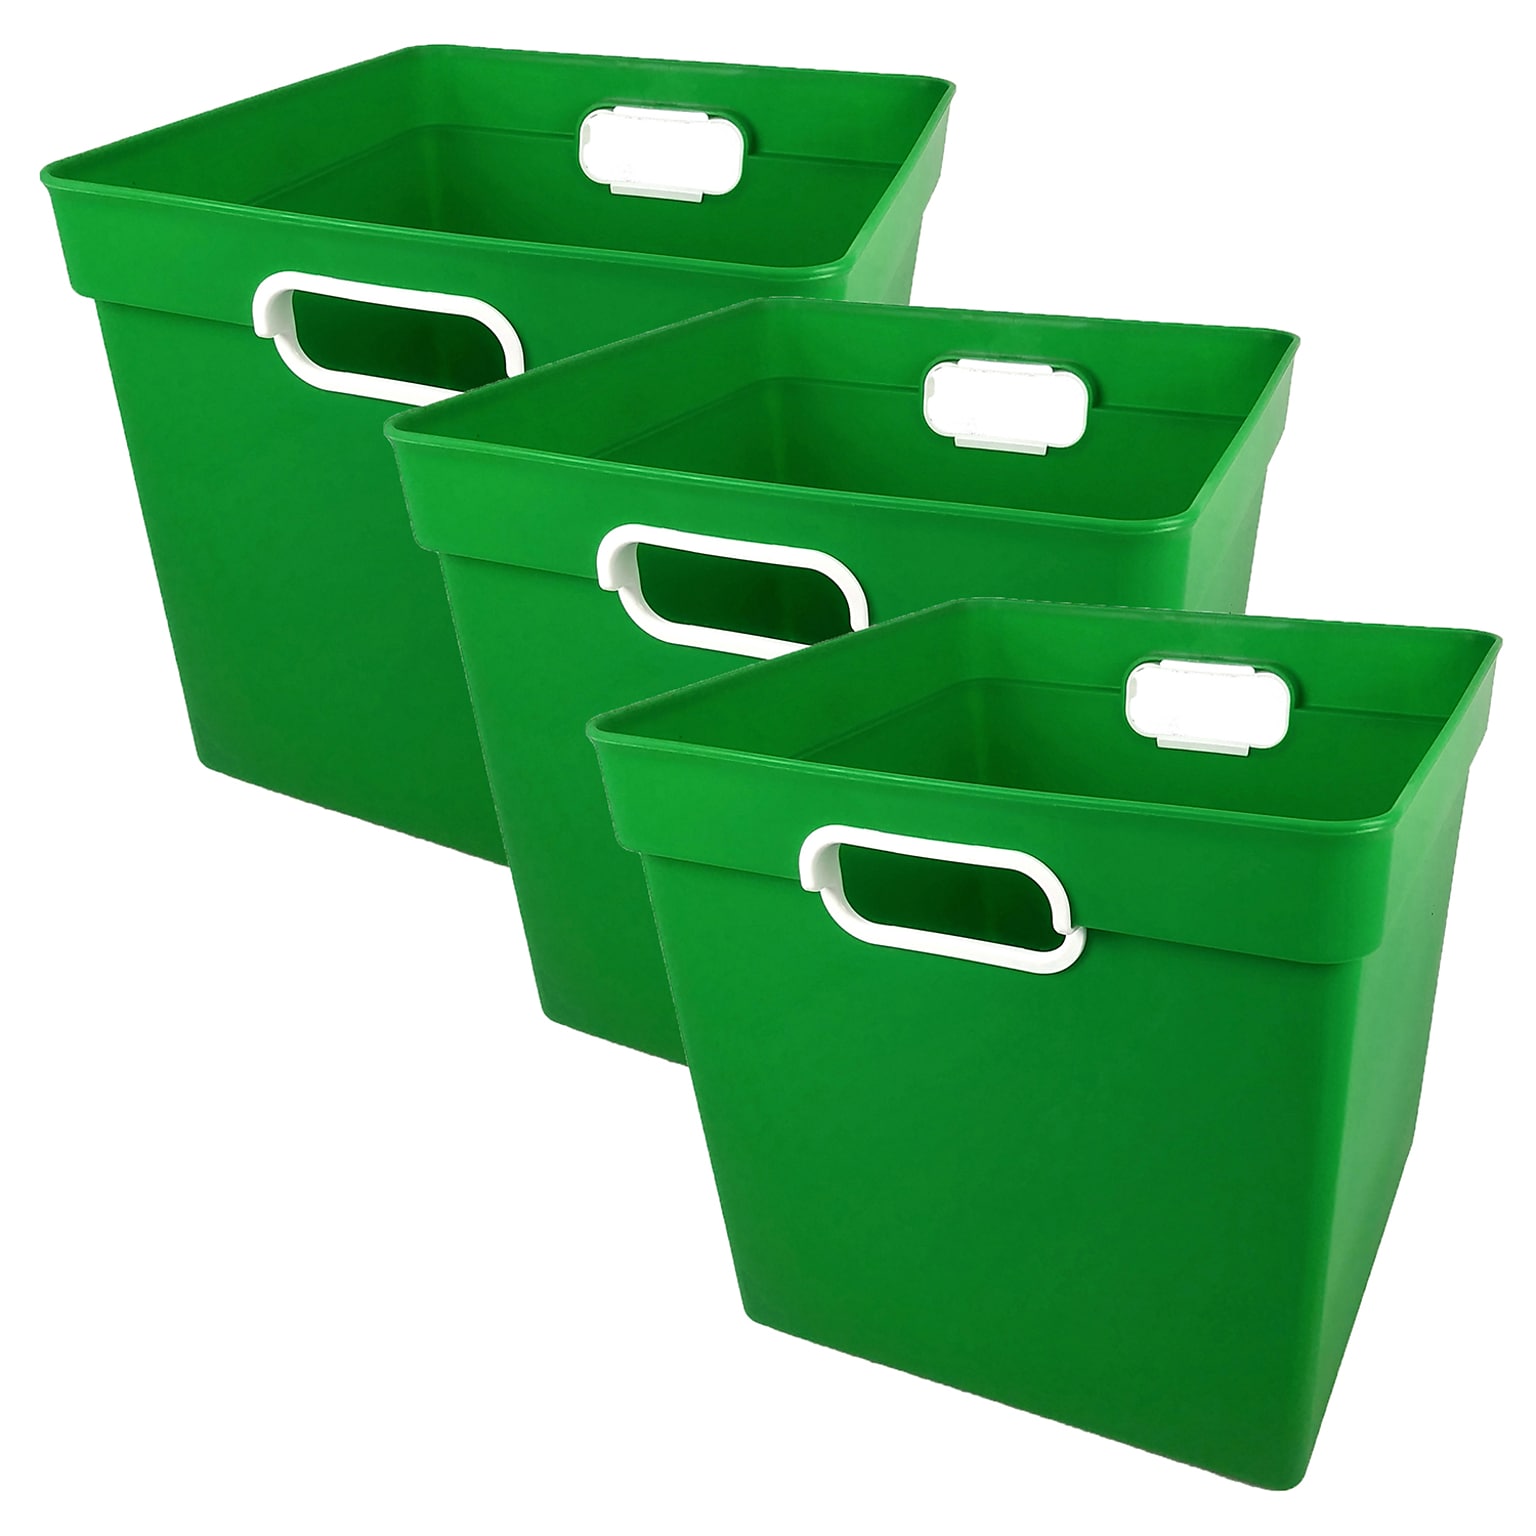 Romanoff Plastic Cube Bin, 11.5 x 11 x 10.5, Green, Pack of 3 (ROM72505-3)